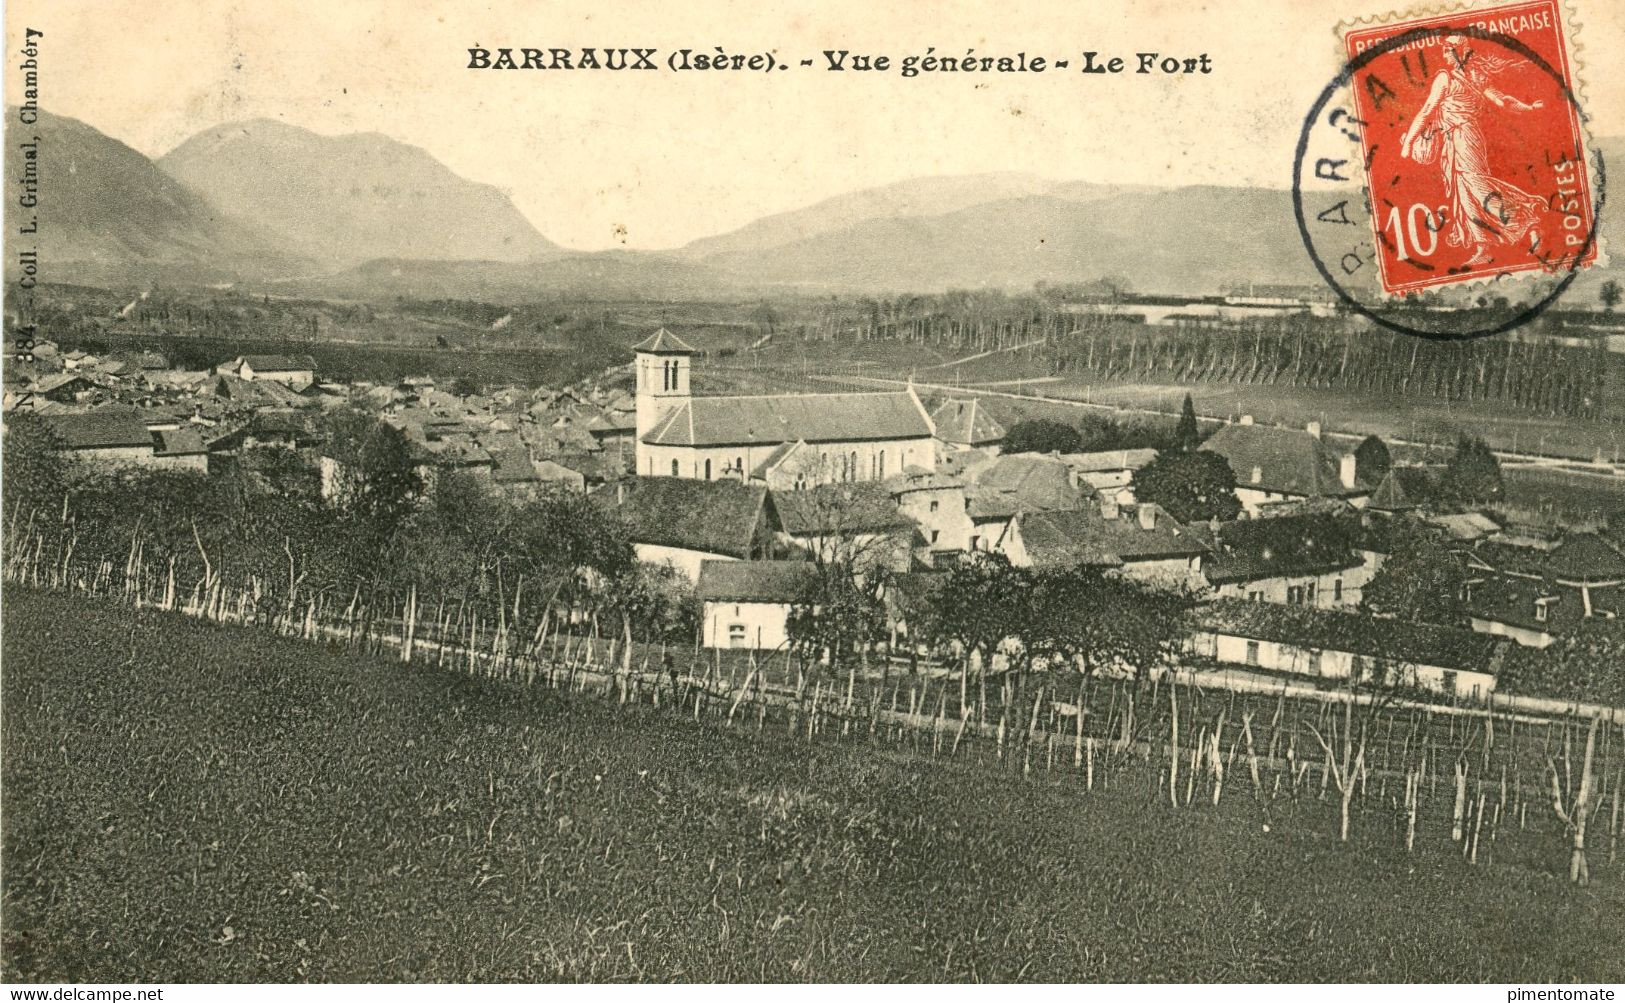 BARRAUX VUE GENERALE LE FORT VIGNOBLE 1912 - Barraux